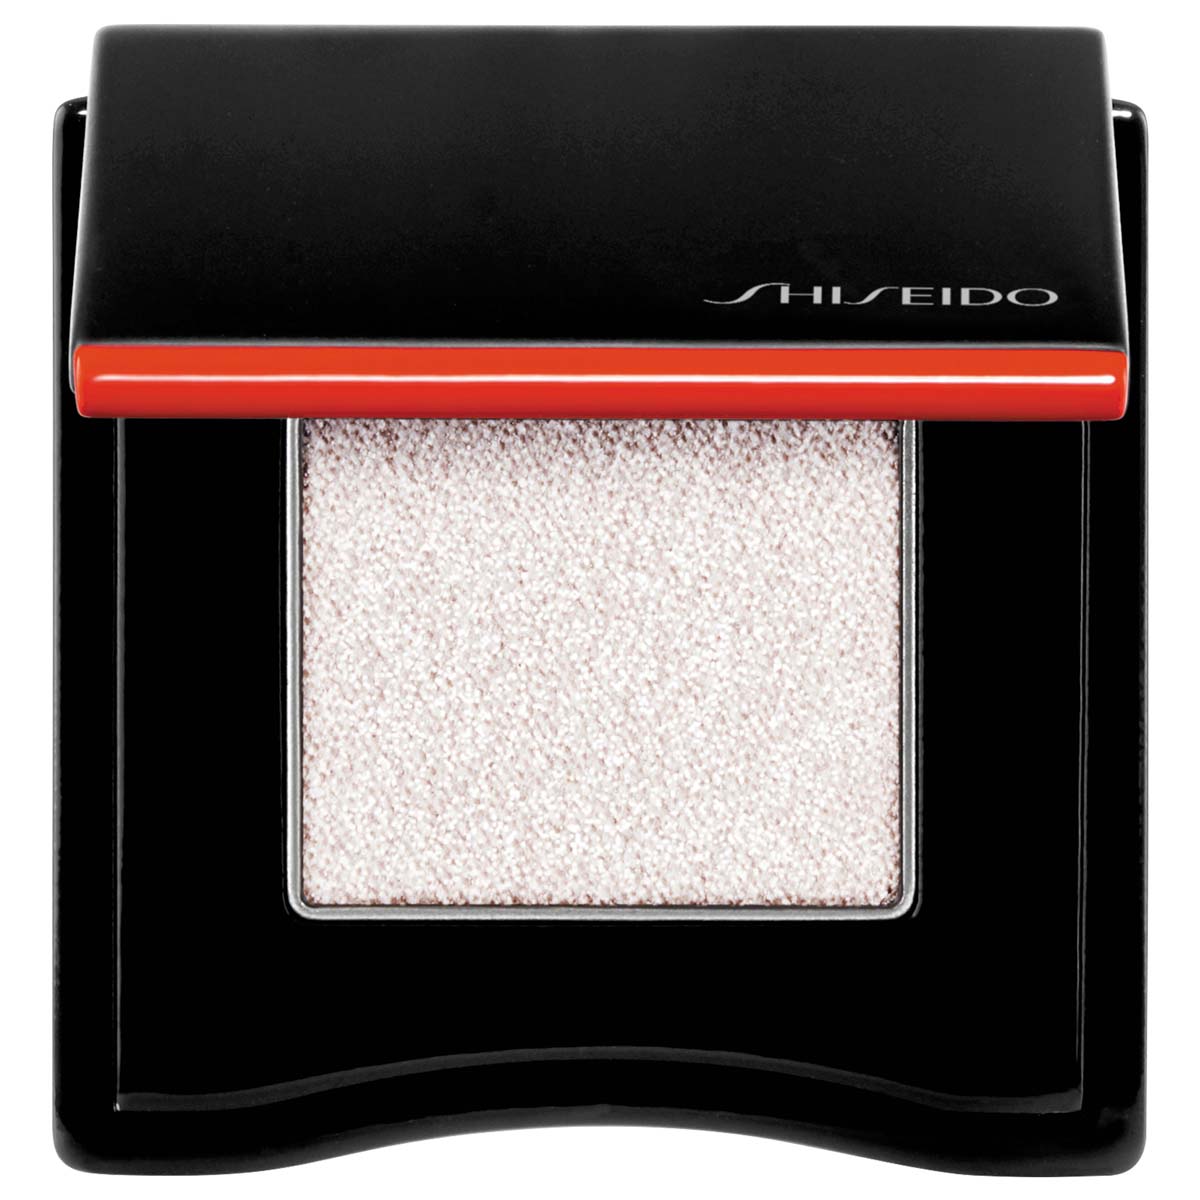 Shiseido Pop Powdergel Eye Shadow 2.6G 08 Suru-Suru Tuape